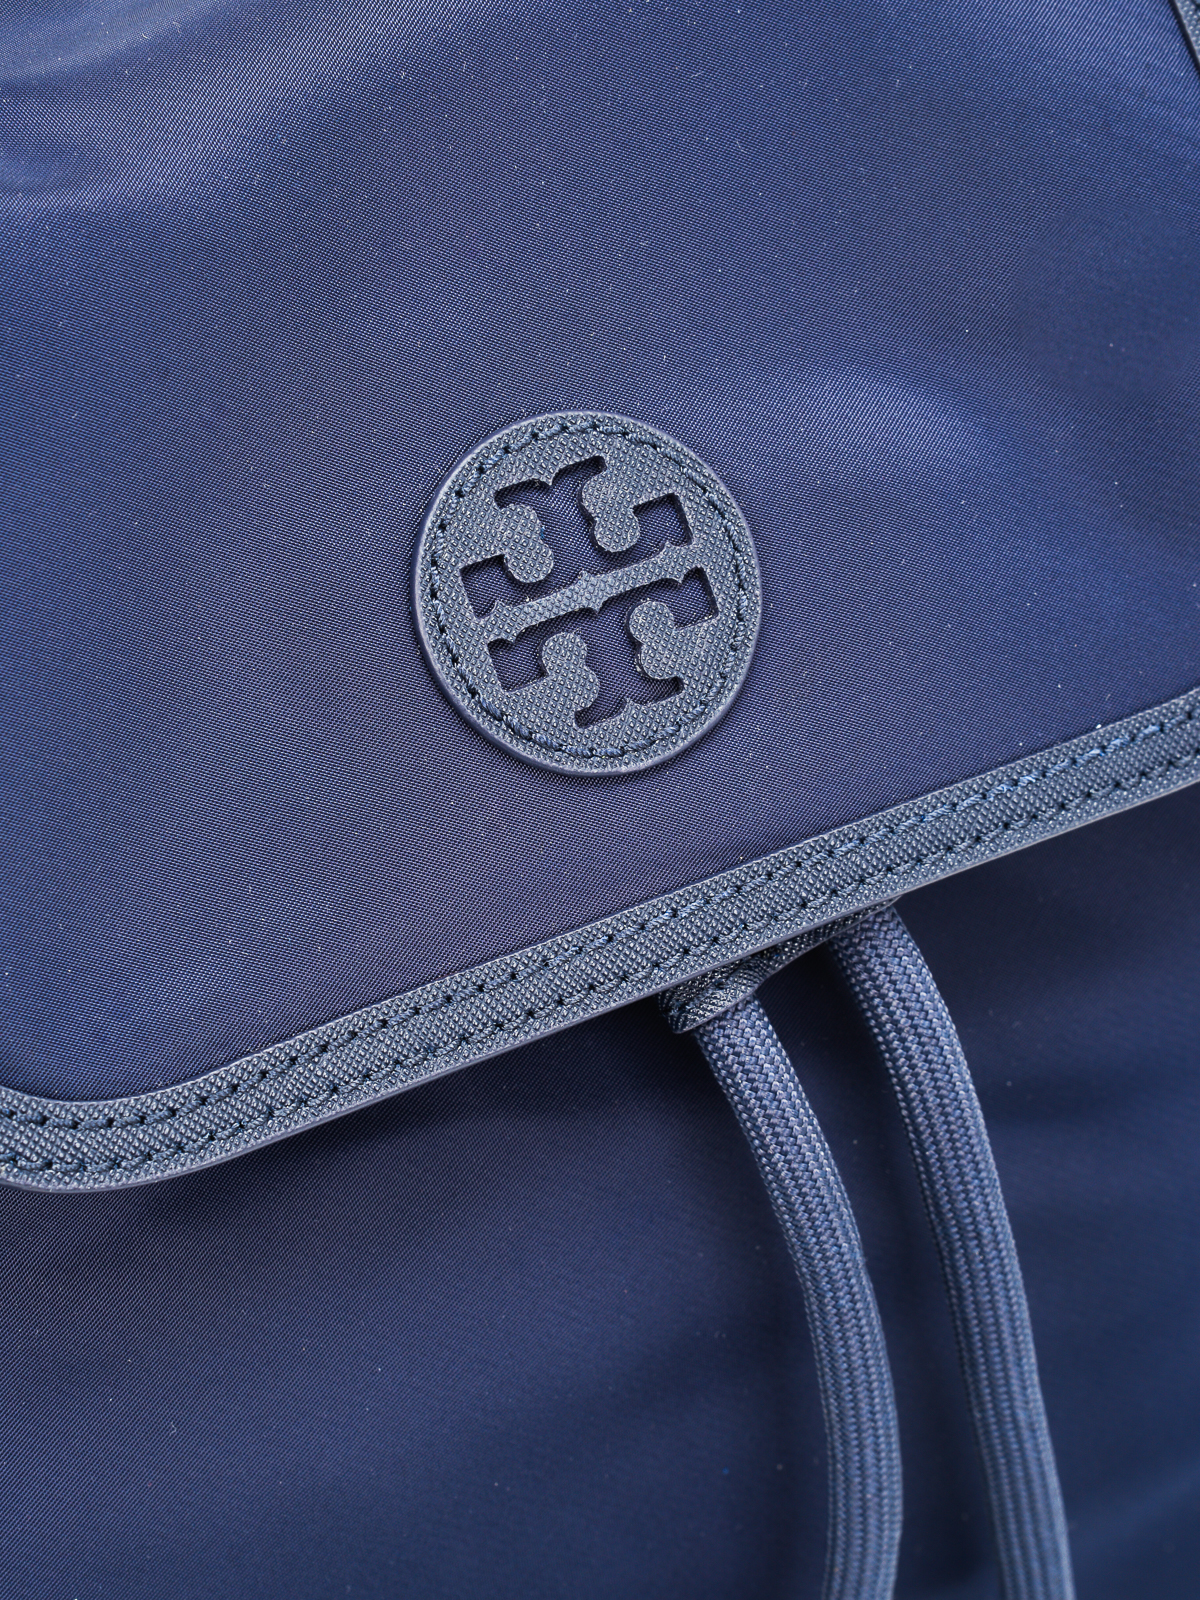 Backpacks Tory Burch - Scout mini backpack - 35719405 